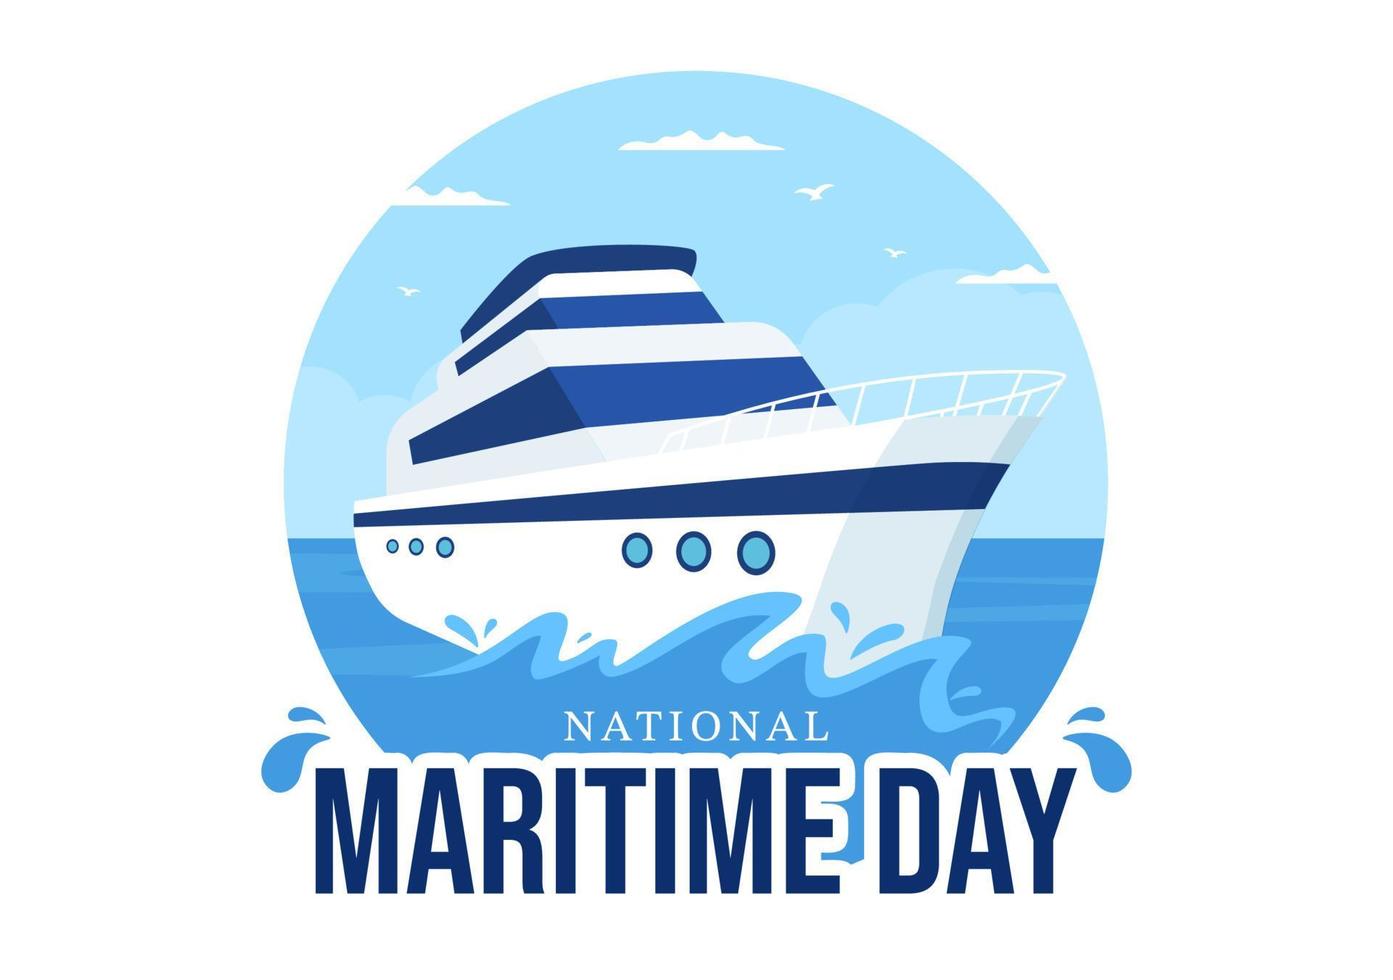 ilustração do dia marítimo mundial com mar e navio para banner da web ou página de destino em modelos desenhados à mão de desenhos animados de celebração náutica plana azul vetor